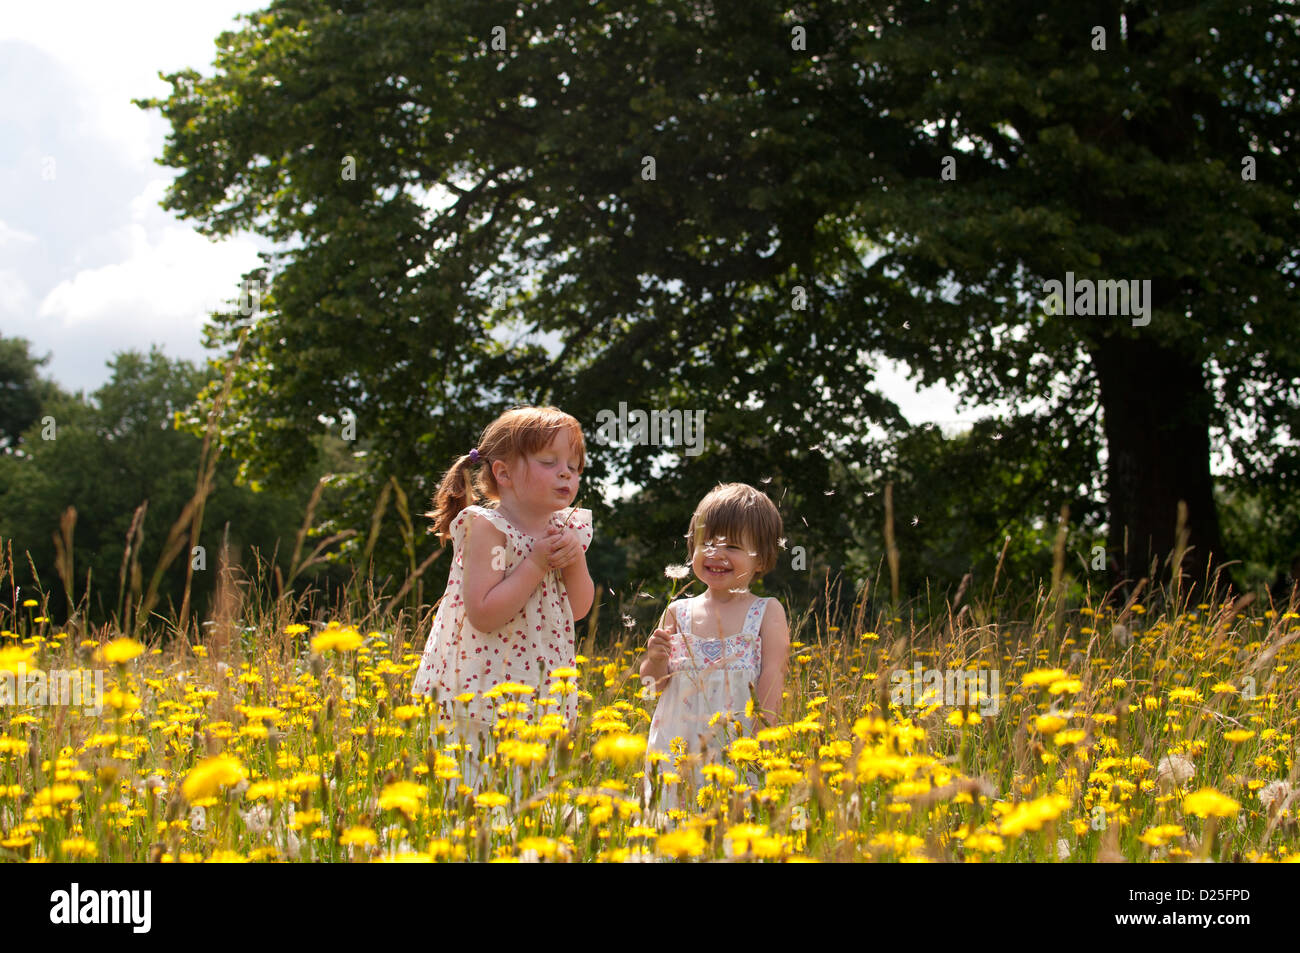 Two little girls standing in a wild flower meadow, blowing dandelion clocks Stock Photo